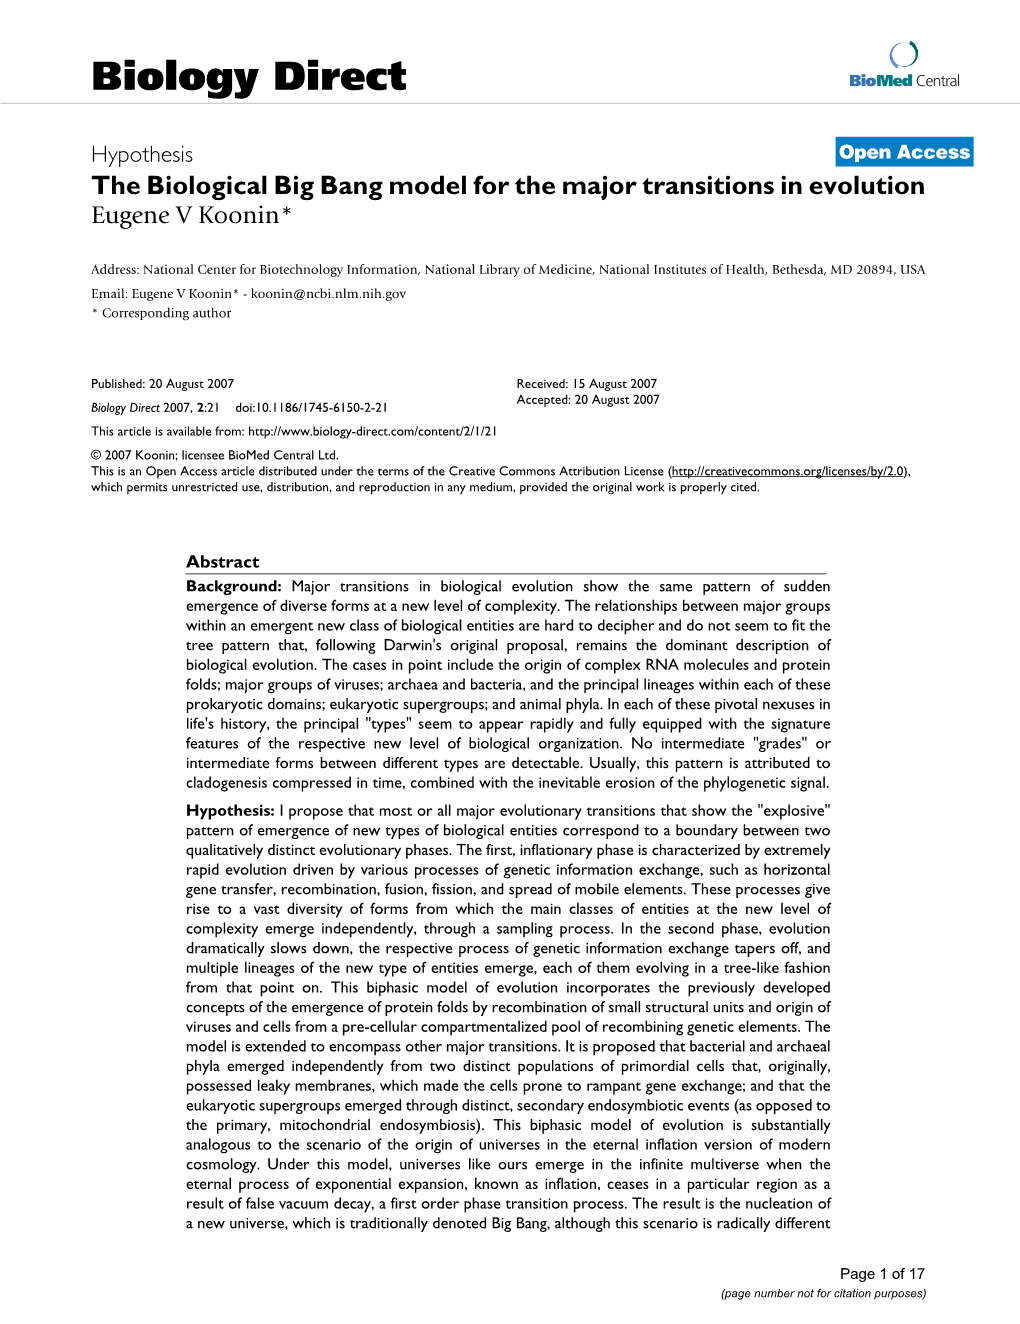 The Biological Big Bang Model for the Major Transitions in Evolution Eugene V Koonin*